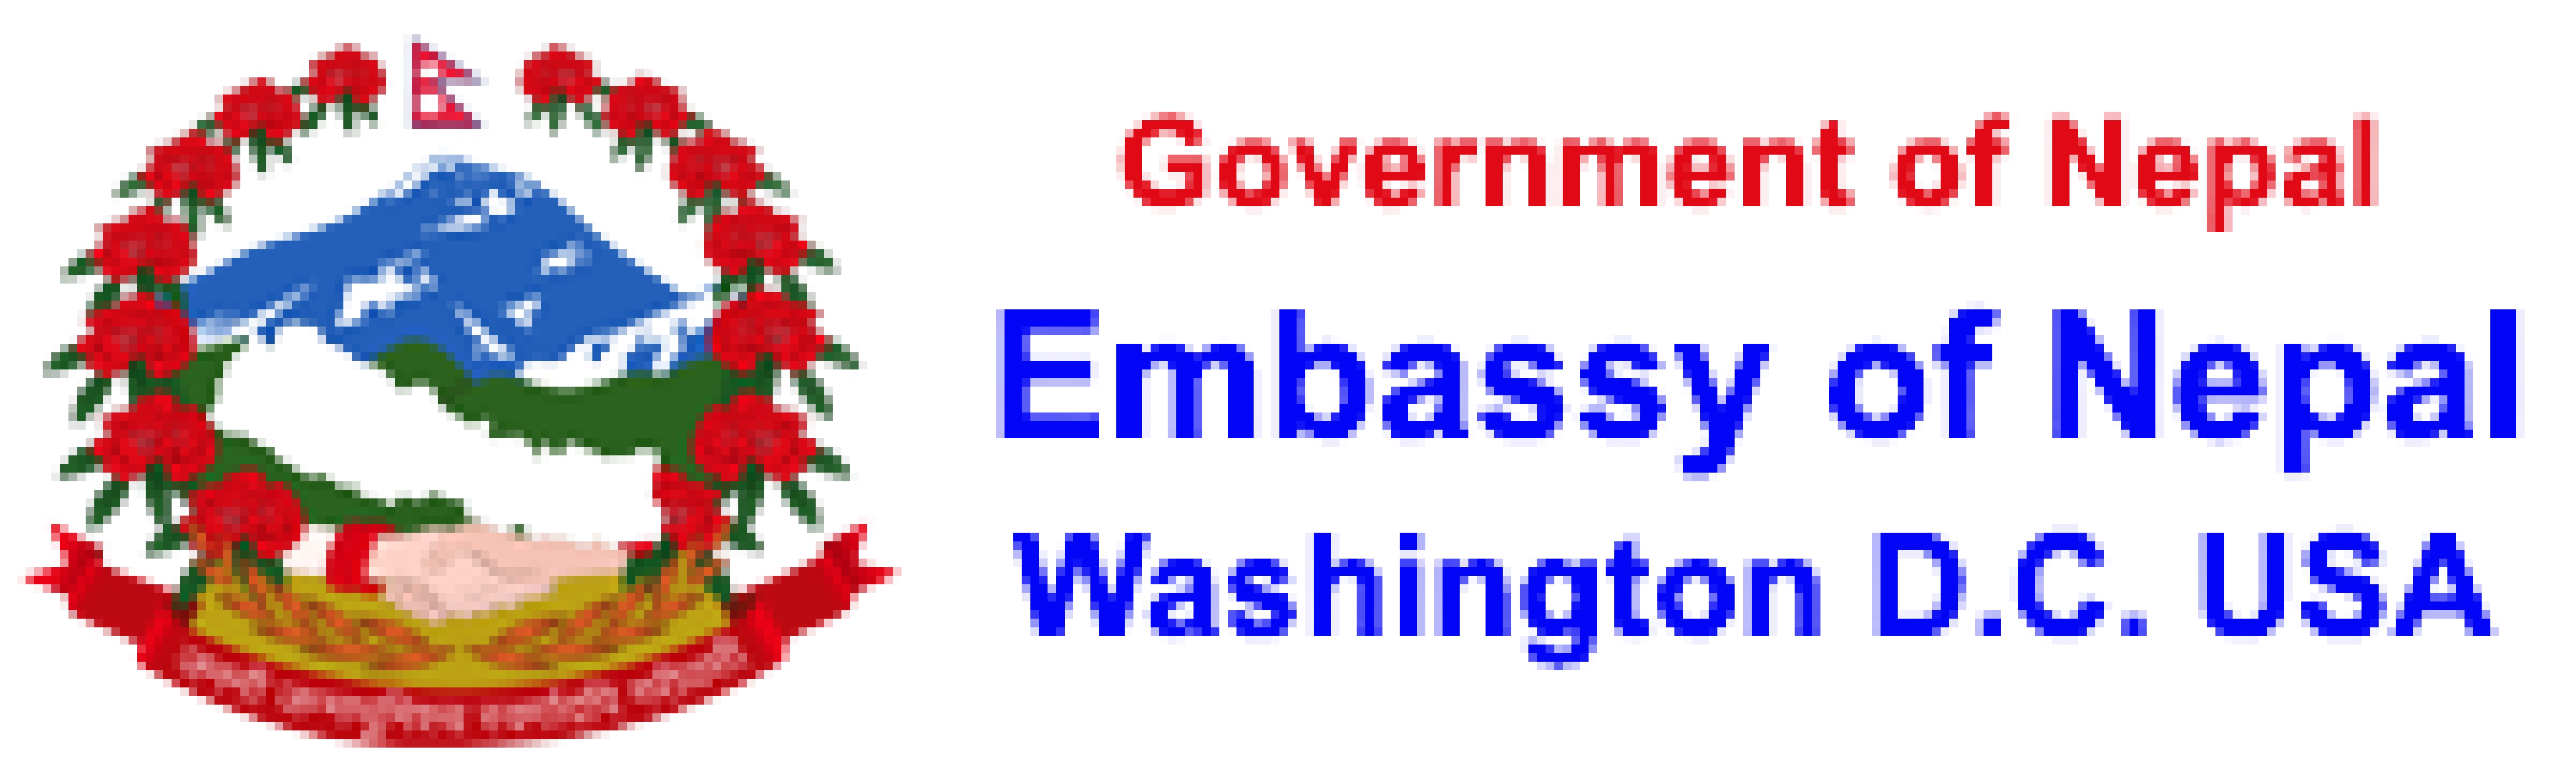 embassay logo